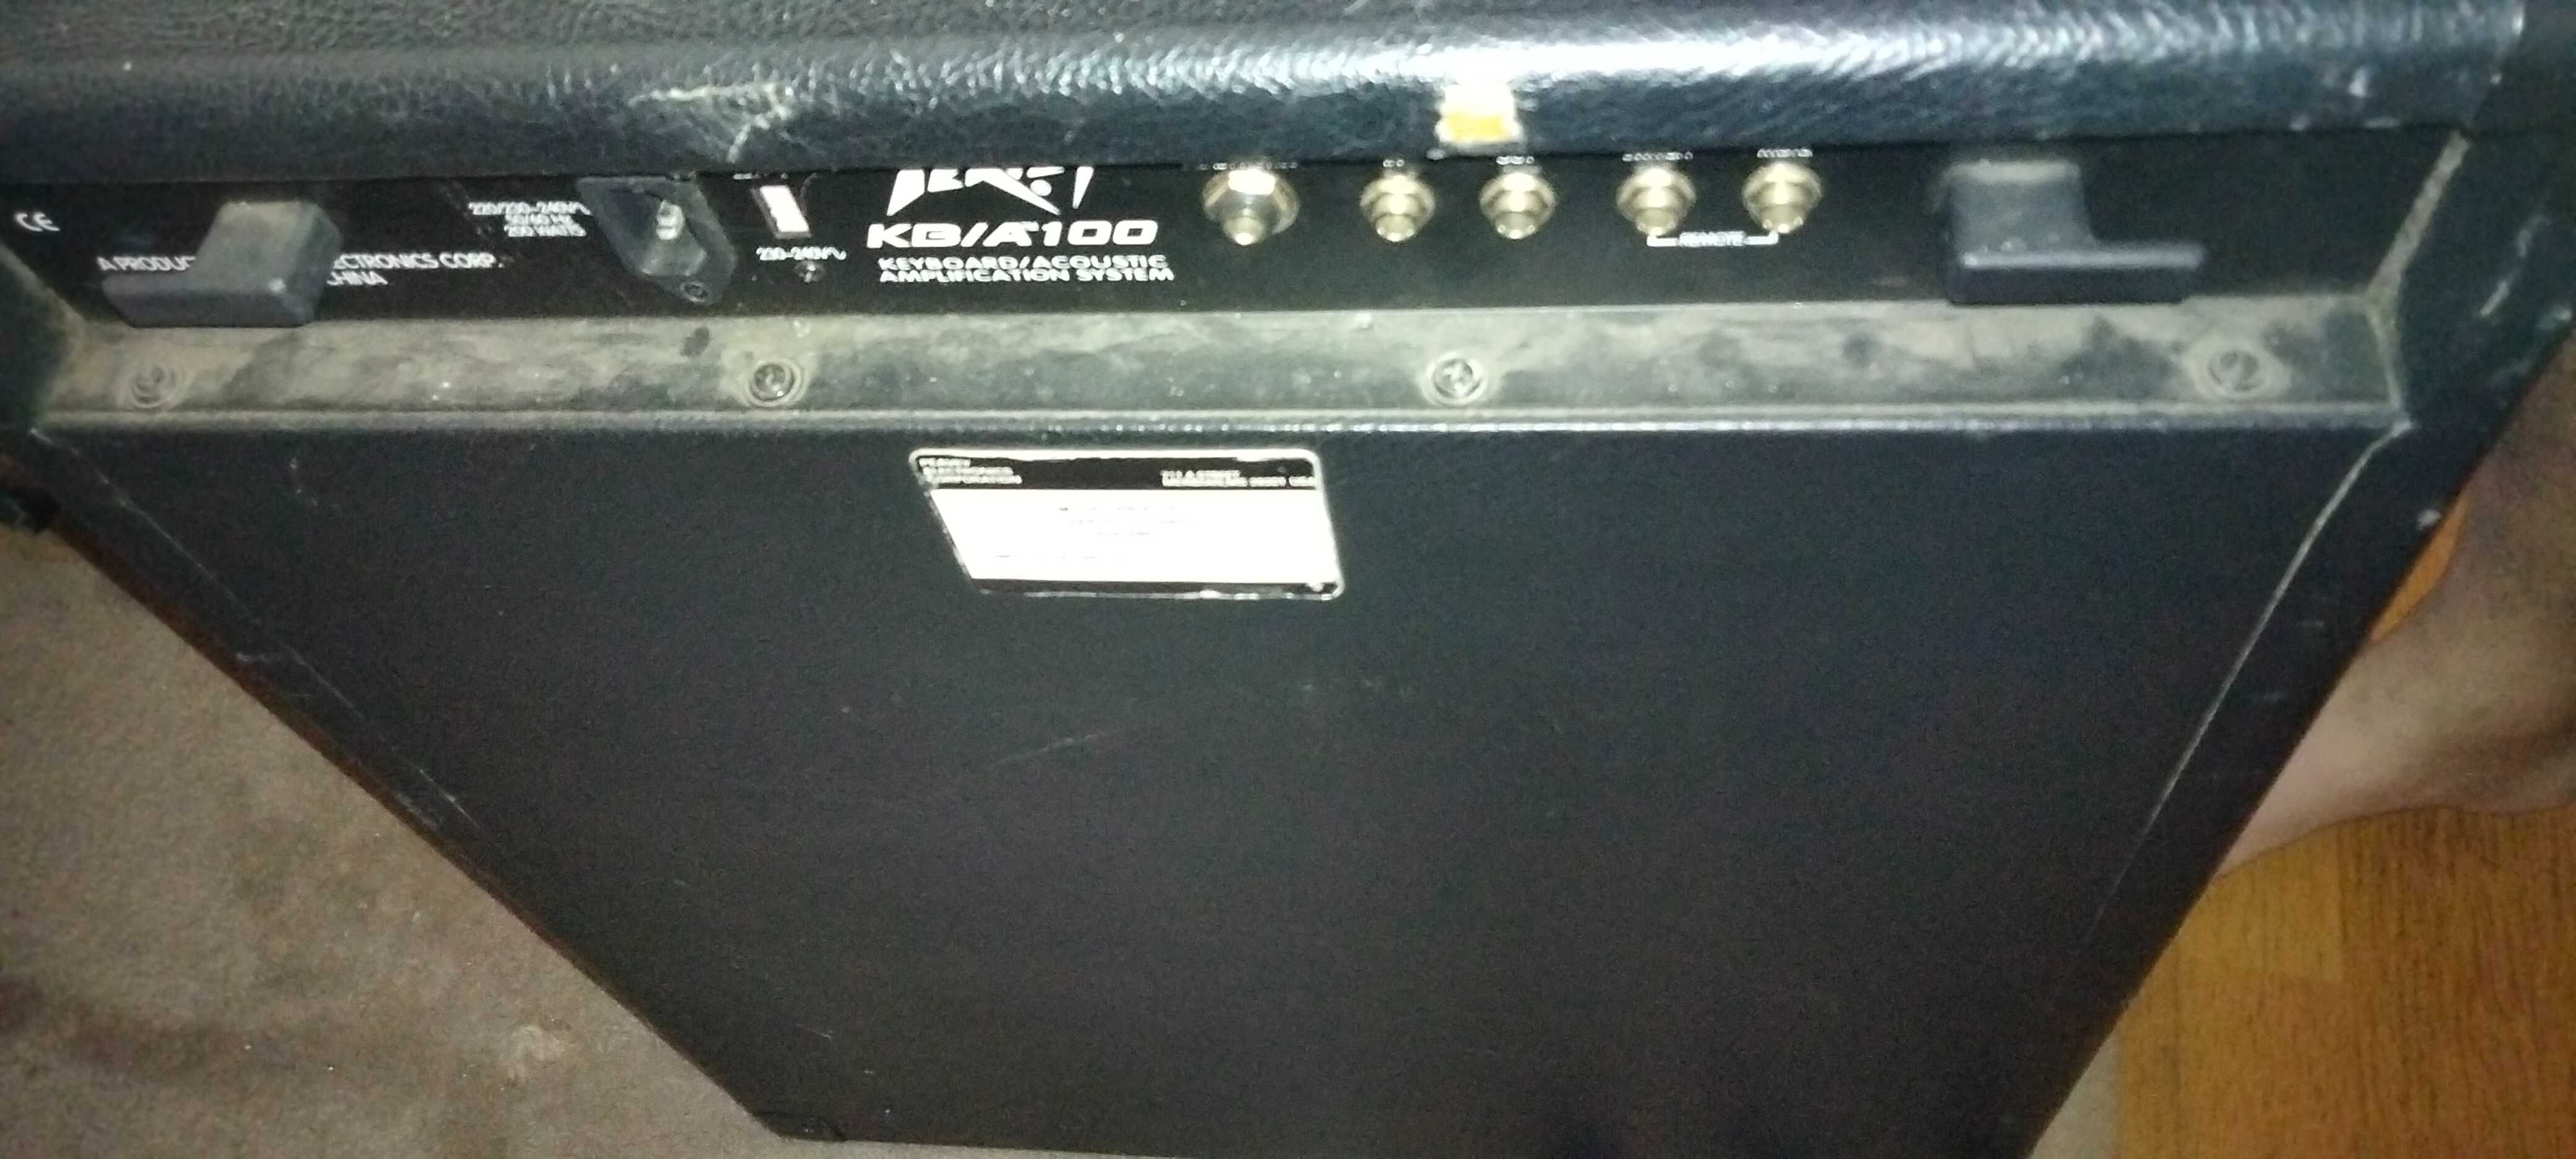 PEAVEY KB/A 100 - Amplificador para Teclados